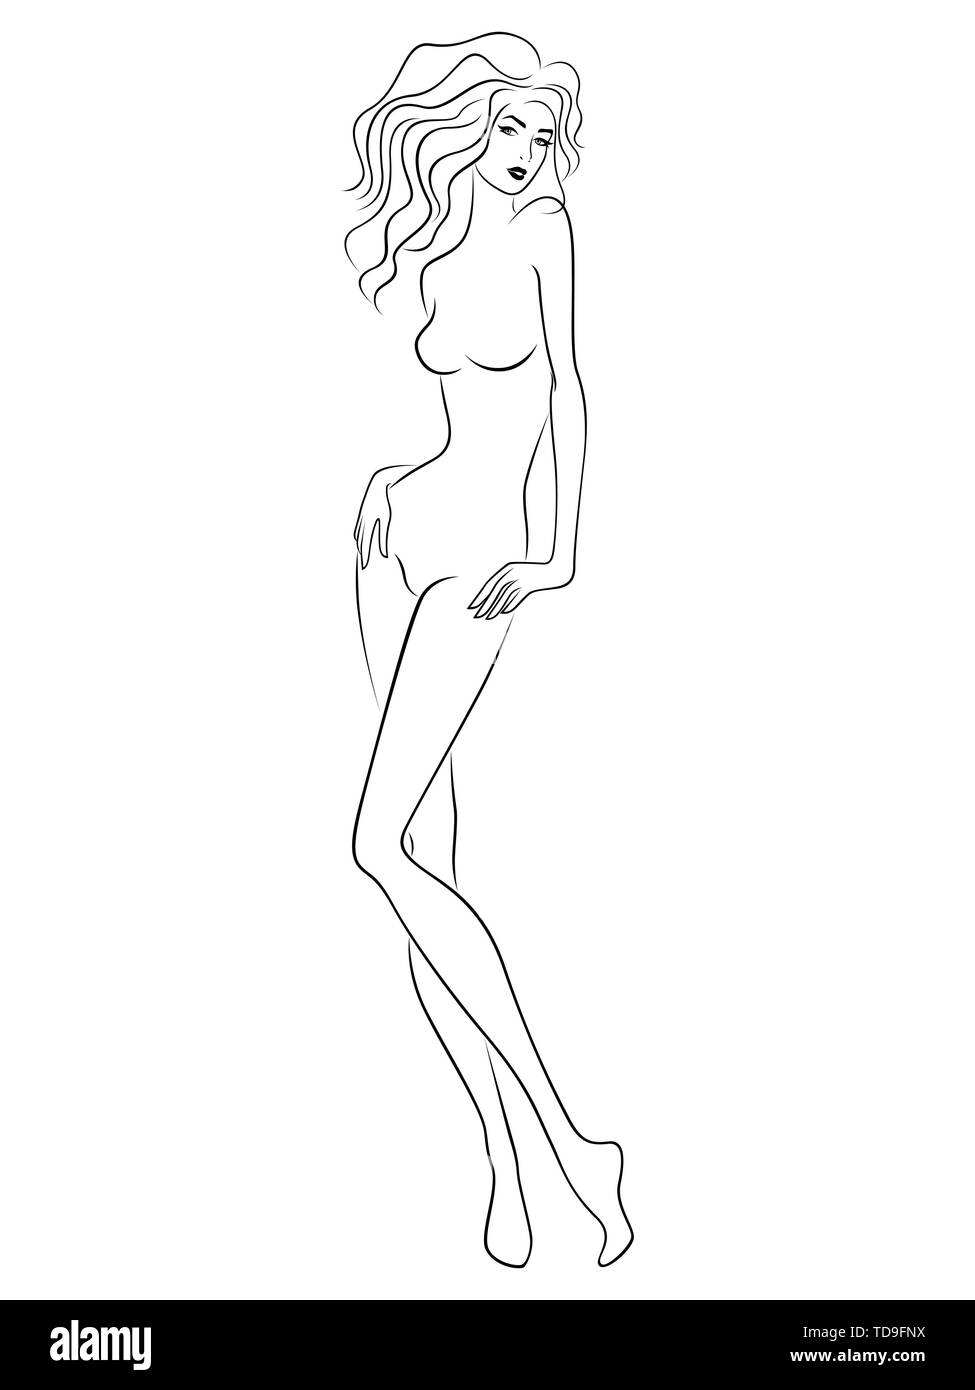 Ð¡nuire à femme avec slim figure isolé sur le fond blanc, dessin à la main contour vectoriel Illustration de Vecteur